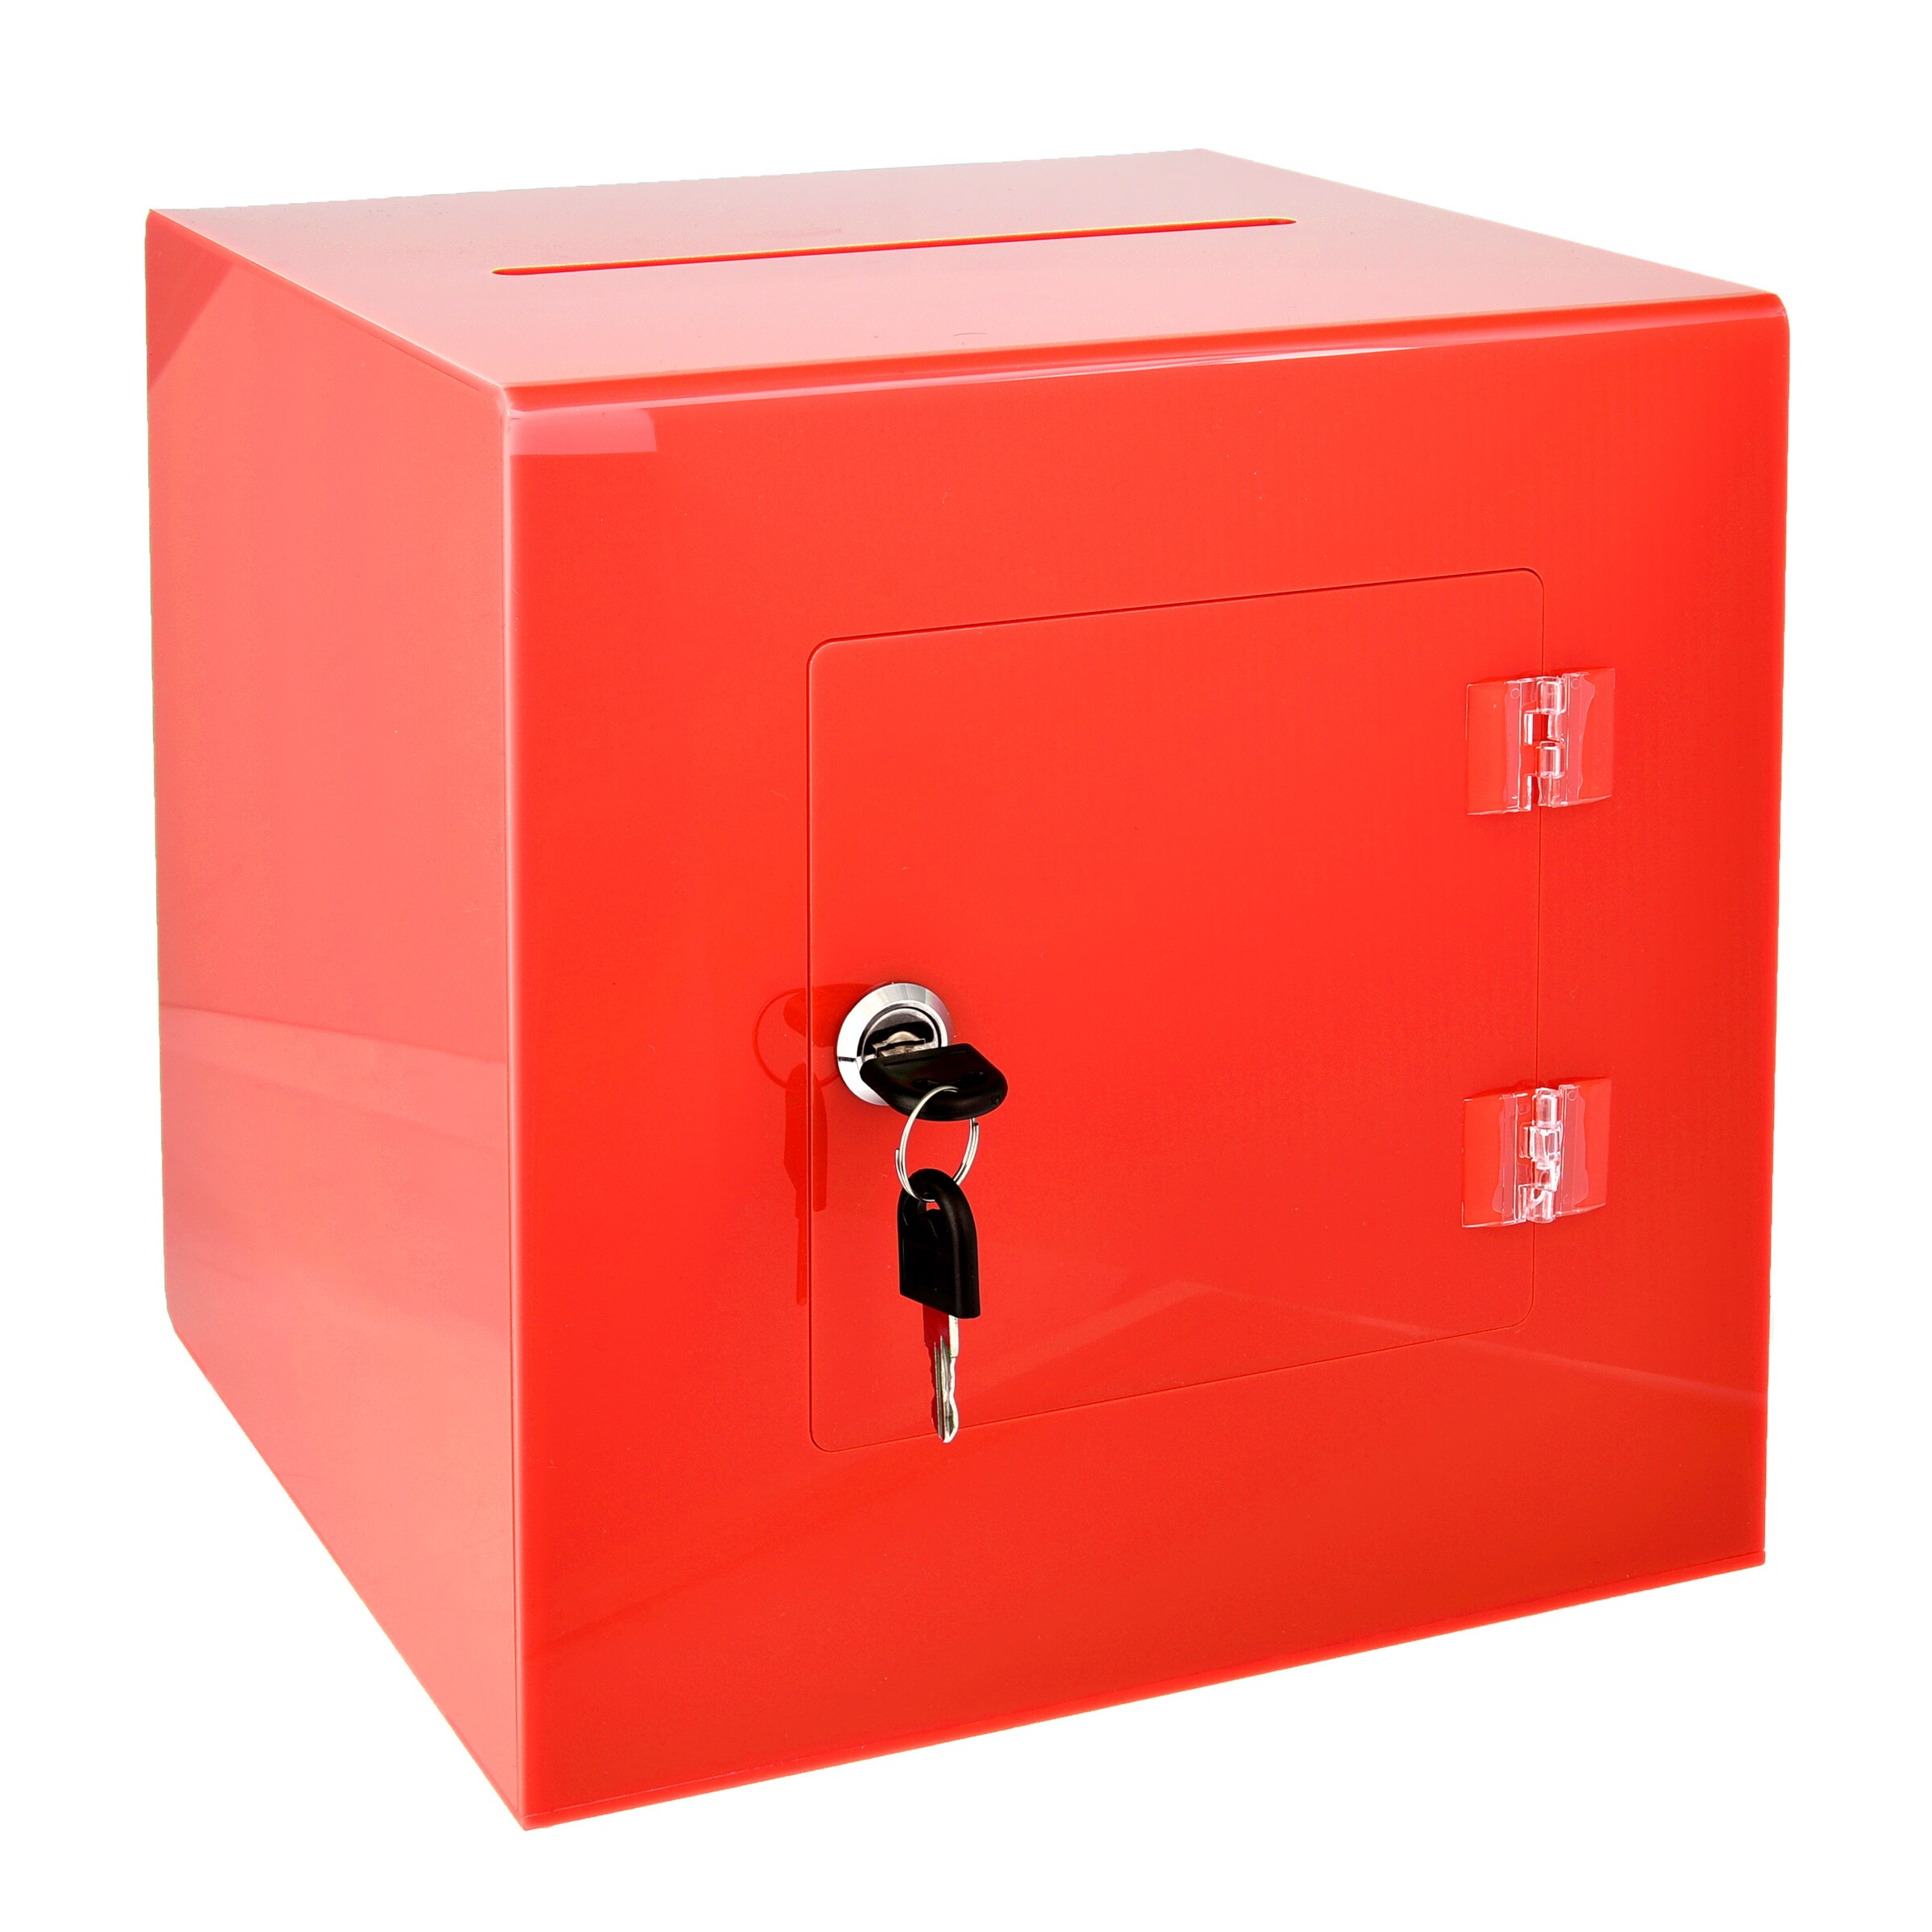 AdirOffice Customizable Wood Suggestion Box Donation Charity Box Red 